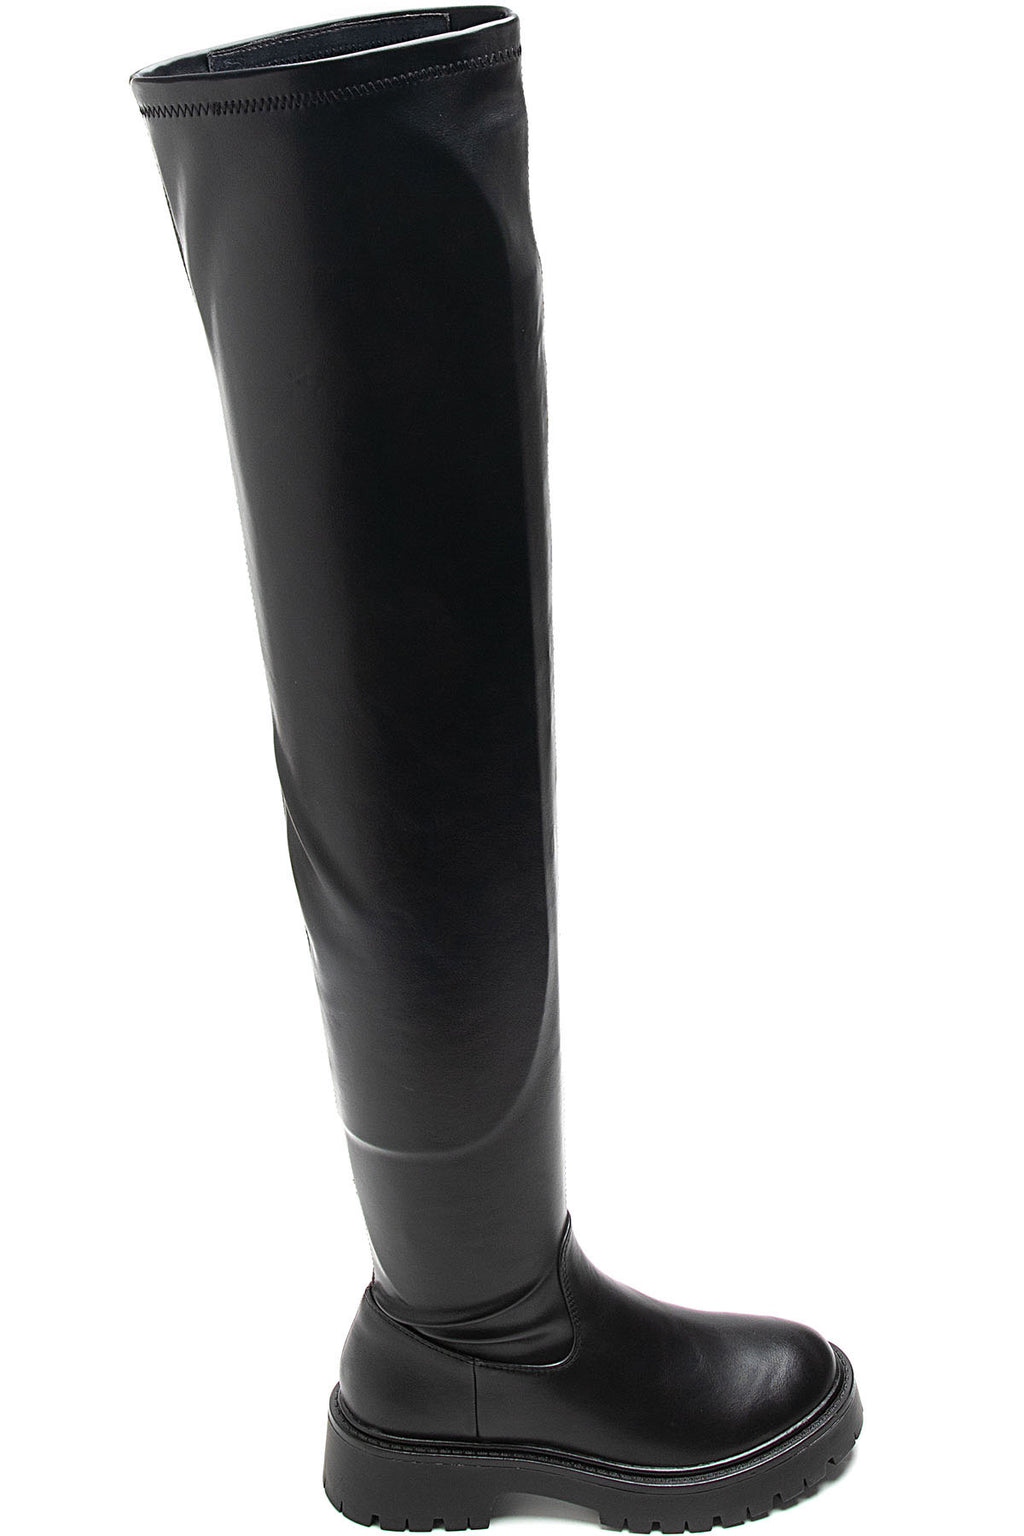 STENA BLACK Thigh High Boots